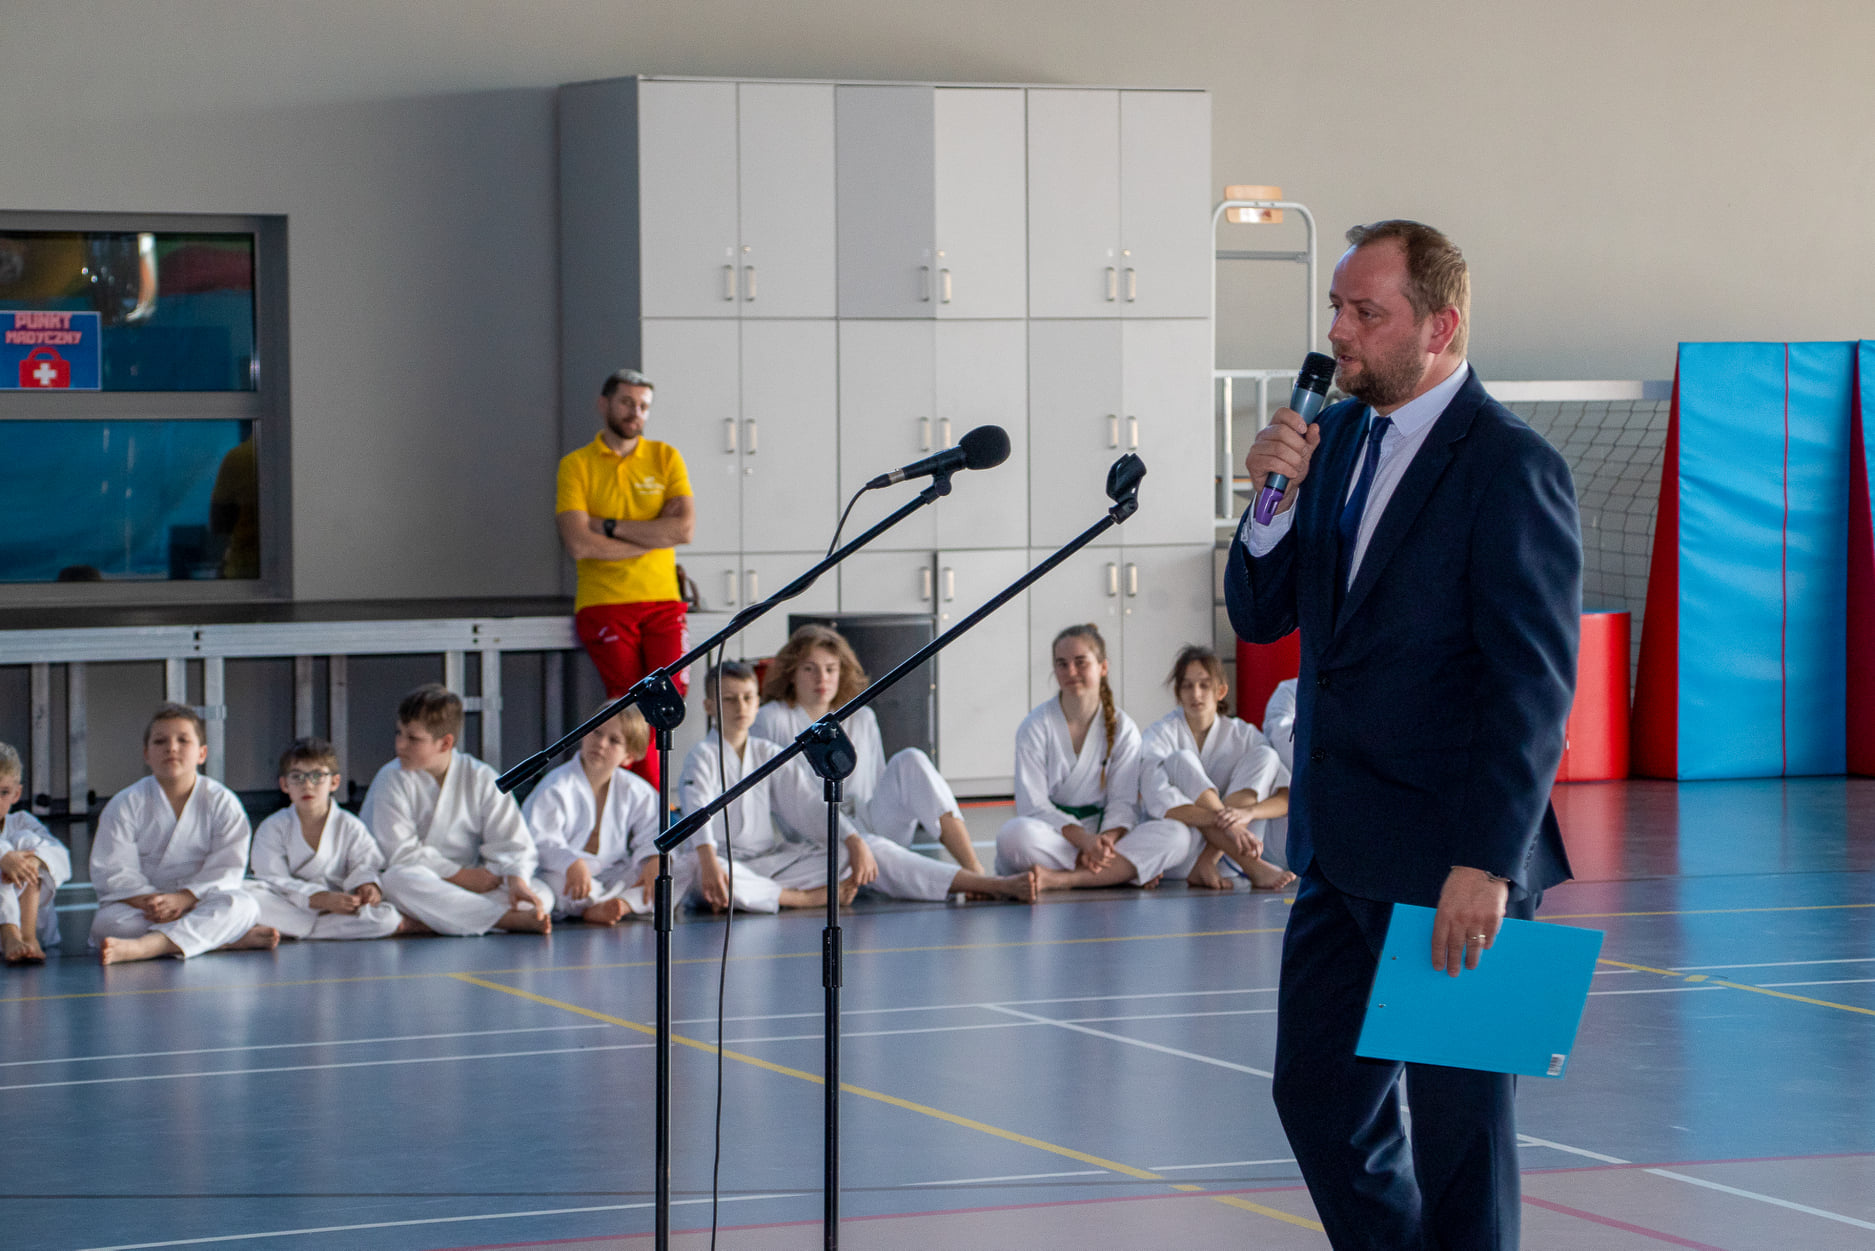 Na zdjęciu widoczny dyrektor GOSTiR podczas przemowy oraz grupa dzieci z zajęć karate wraz z instruktorem